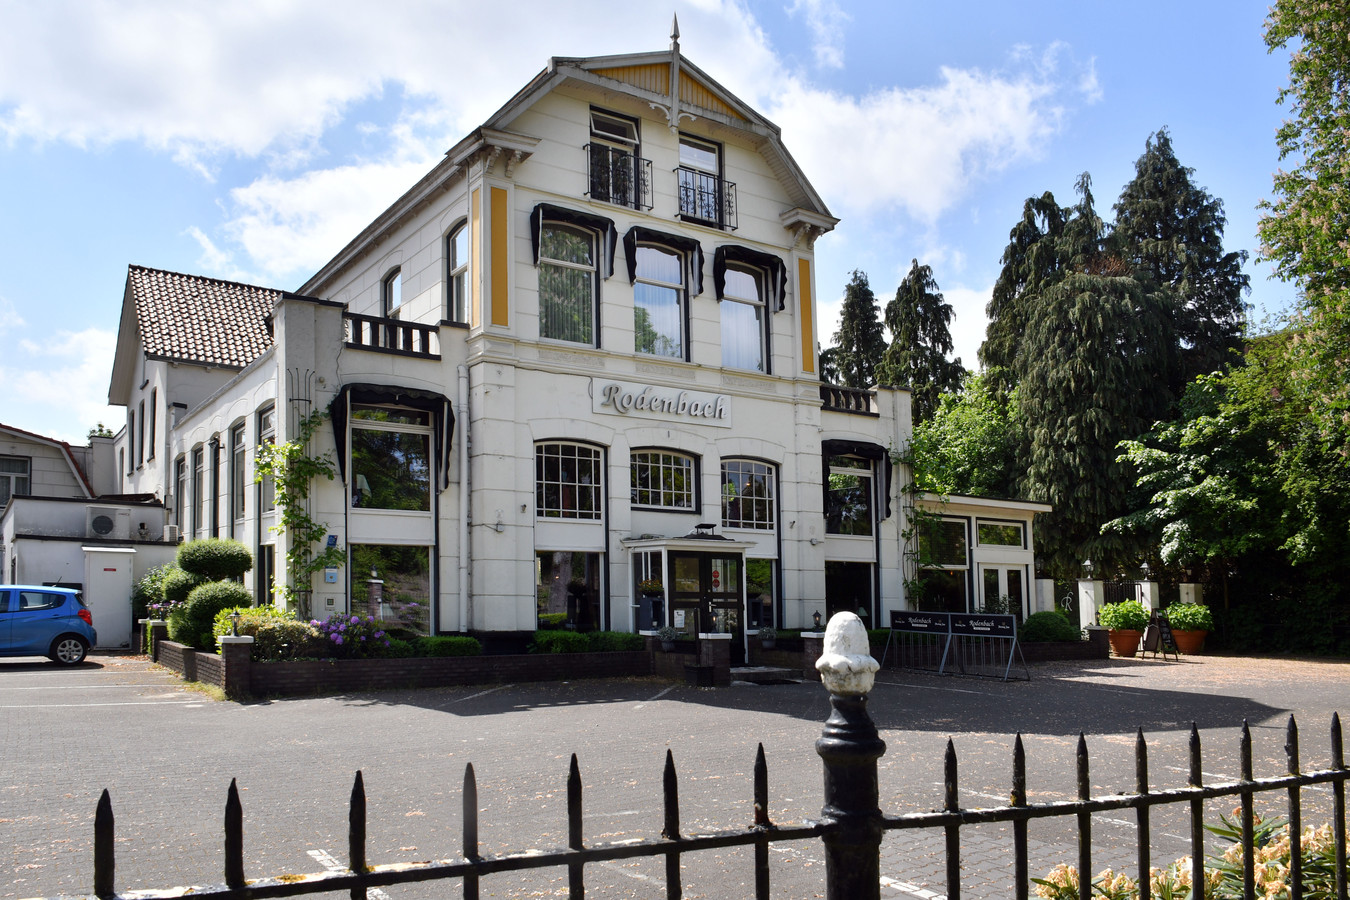 Hotel Rodenbach aan de Parkweg